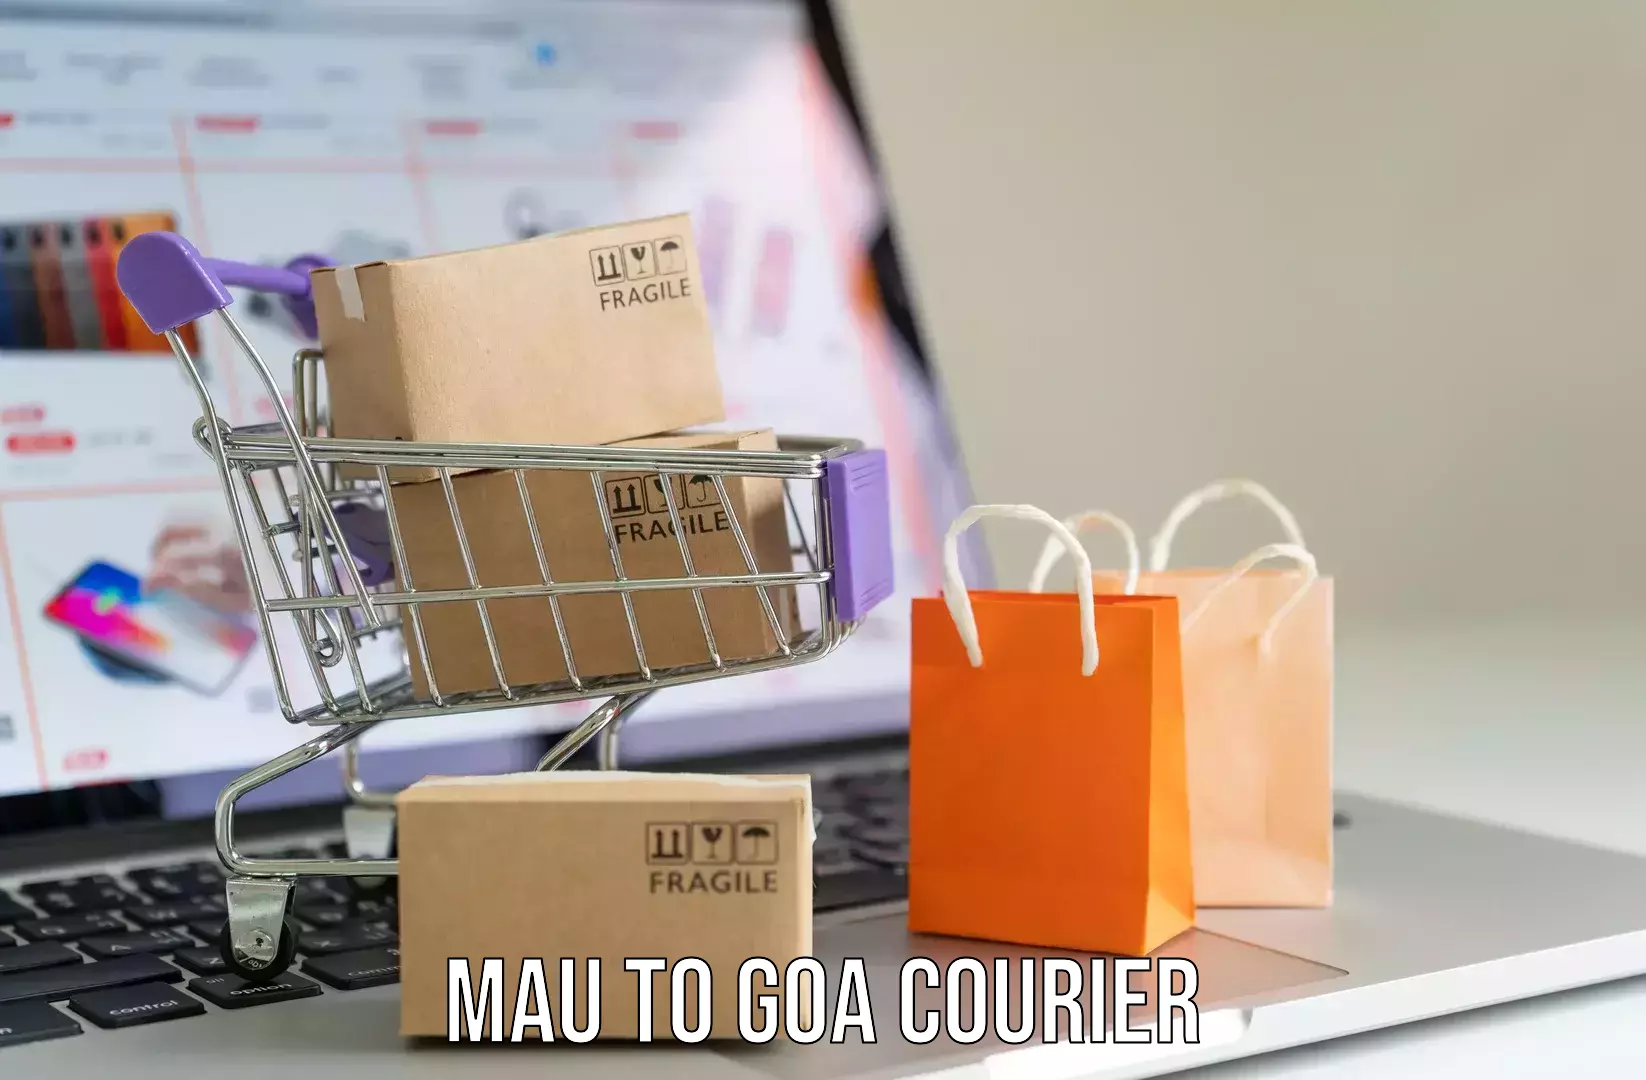 Luggage shipment specialists Mau to South Goa